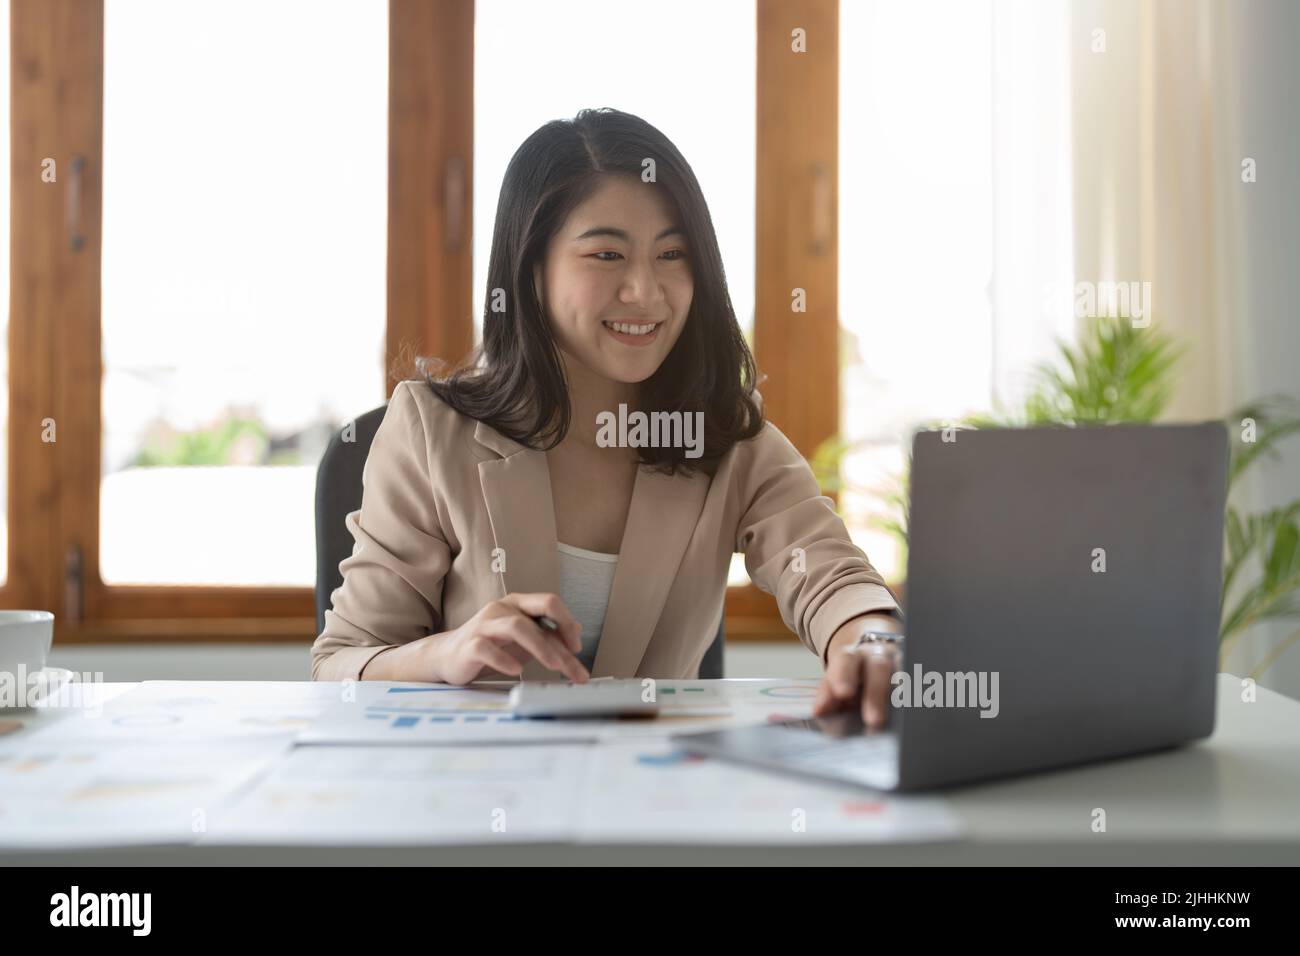 Ritratto di attraente asiatico esperto professionista ragazza agente mediatore assistente esecutivo calcolando il profitto di reddito a loft industriale moderno Foto Stock